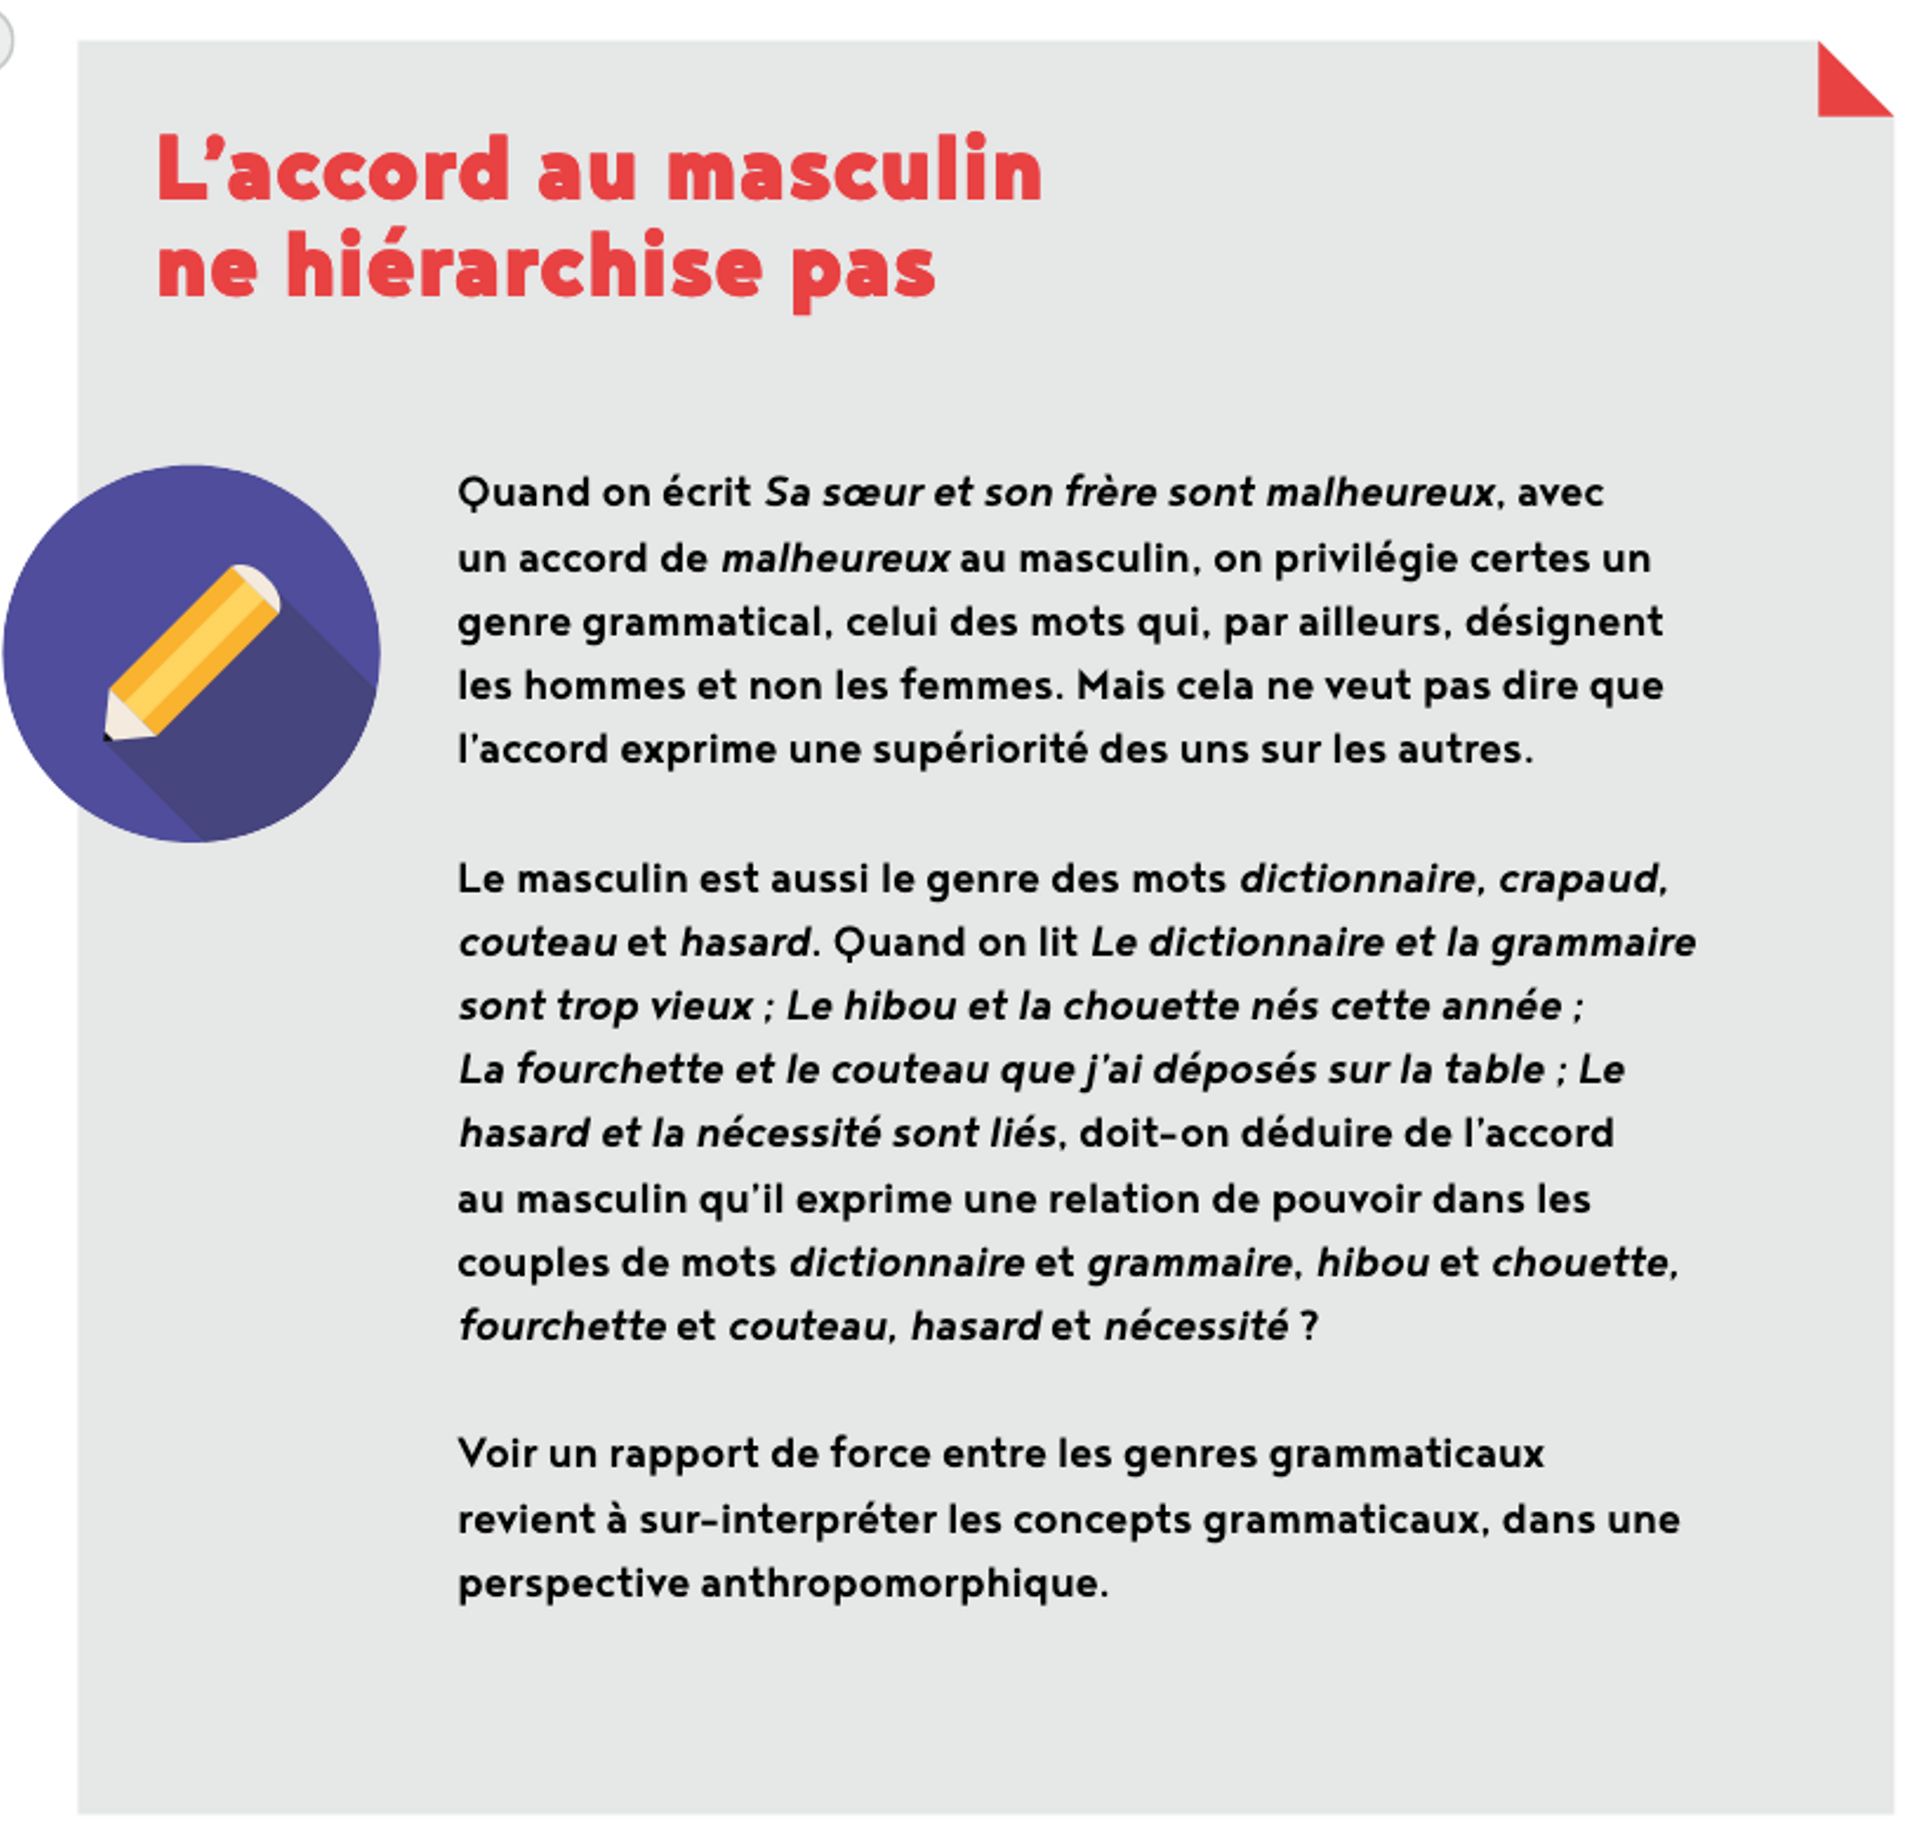 Capture d'écran du guide "Inclure sans exclure" édité par la Fédération Wallonie-Bruxelles.